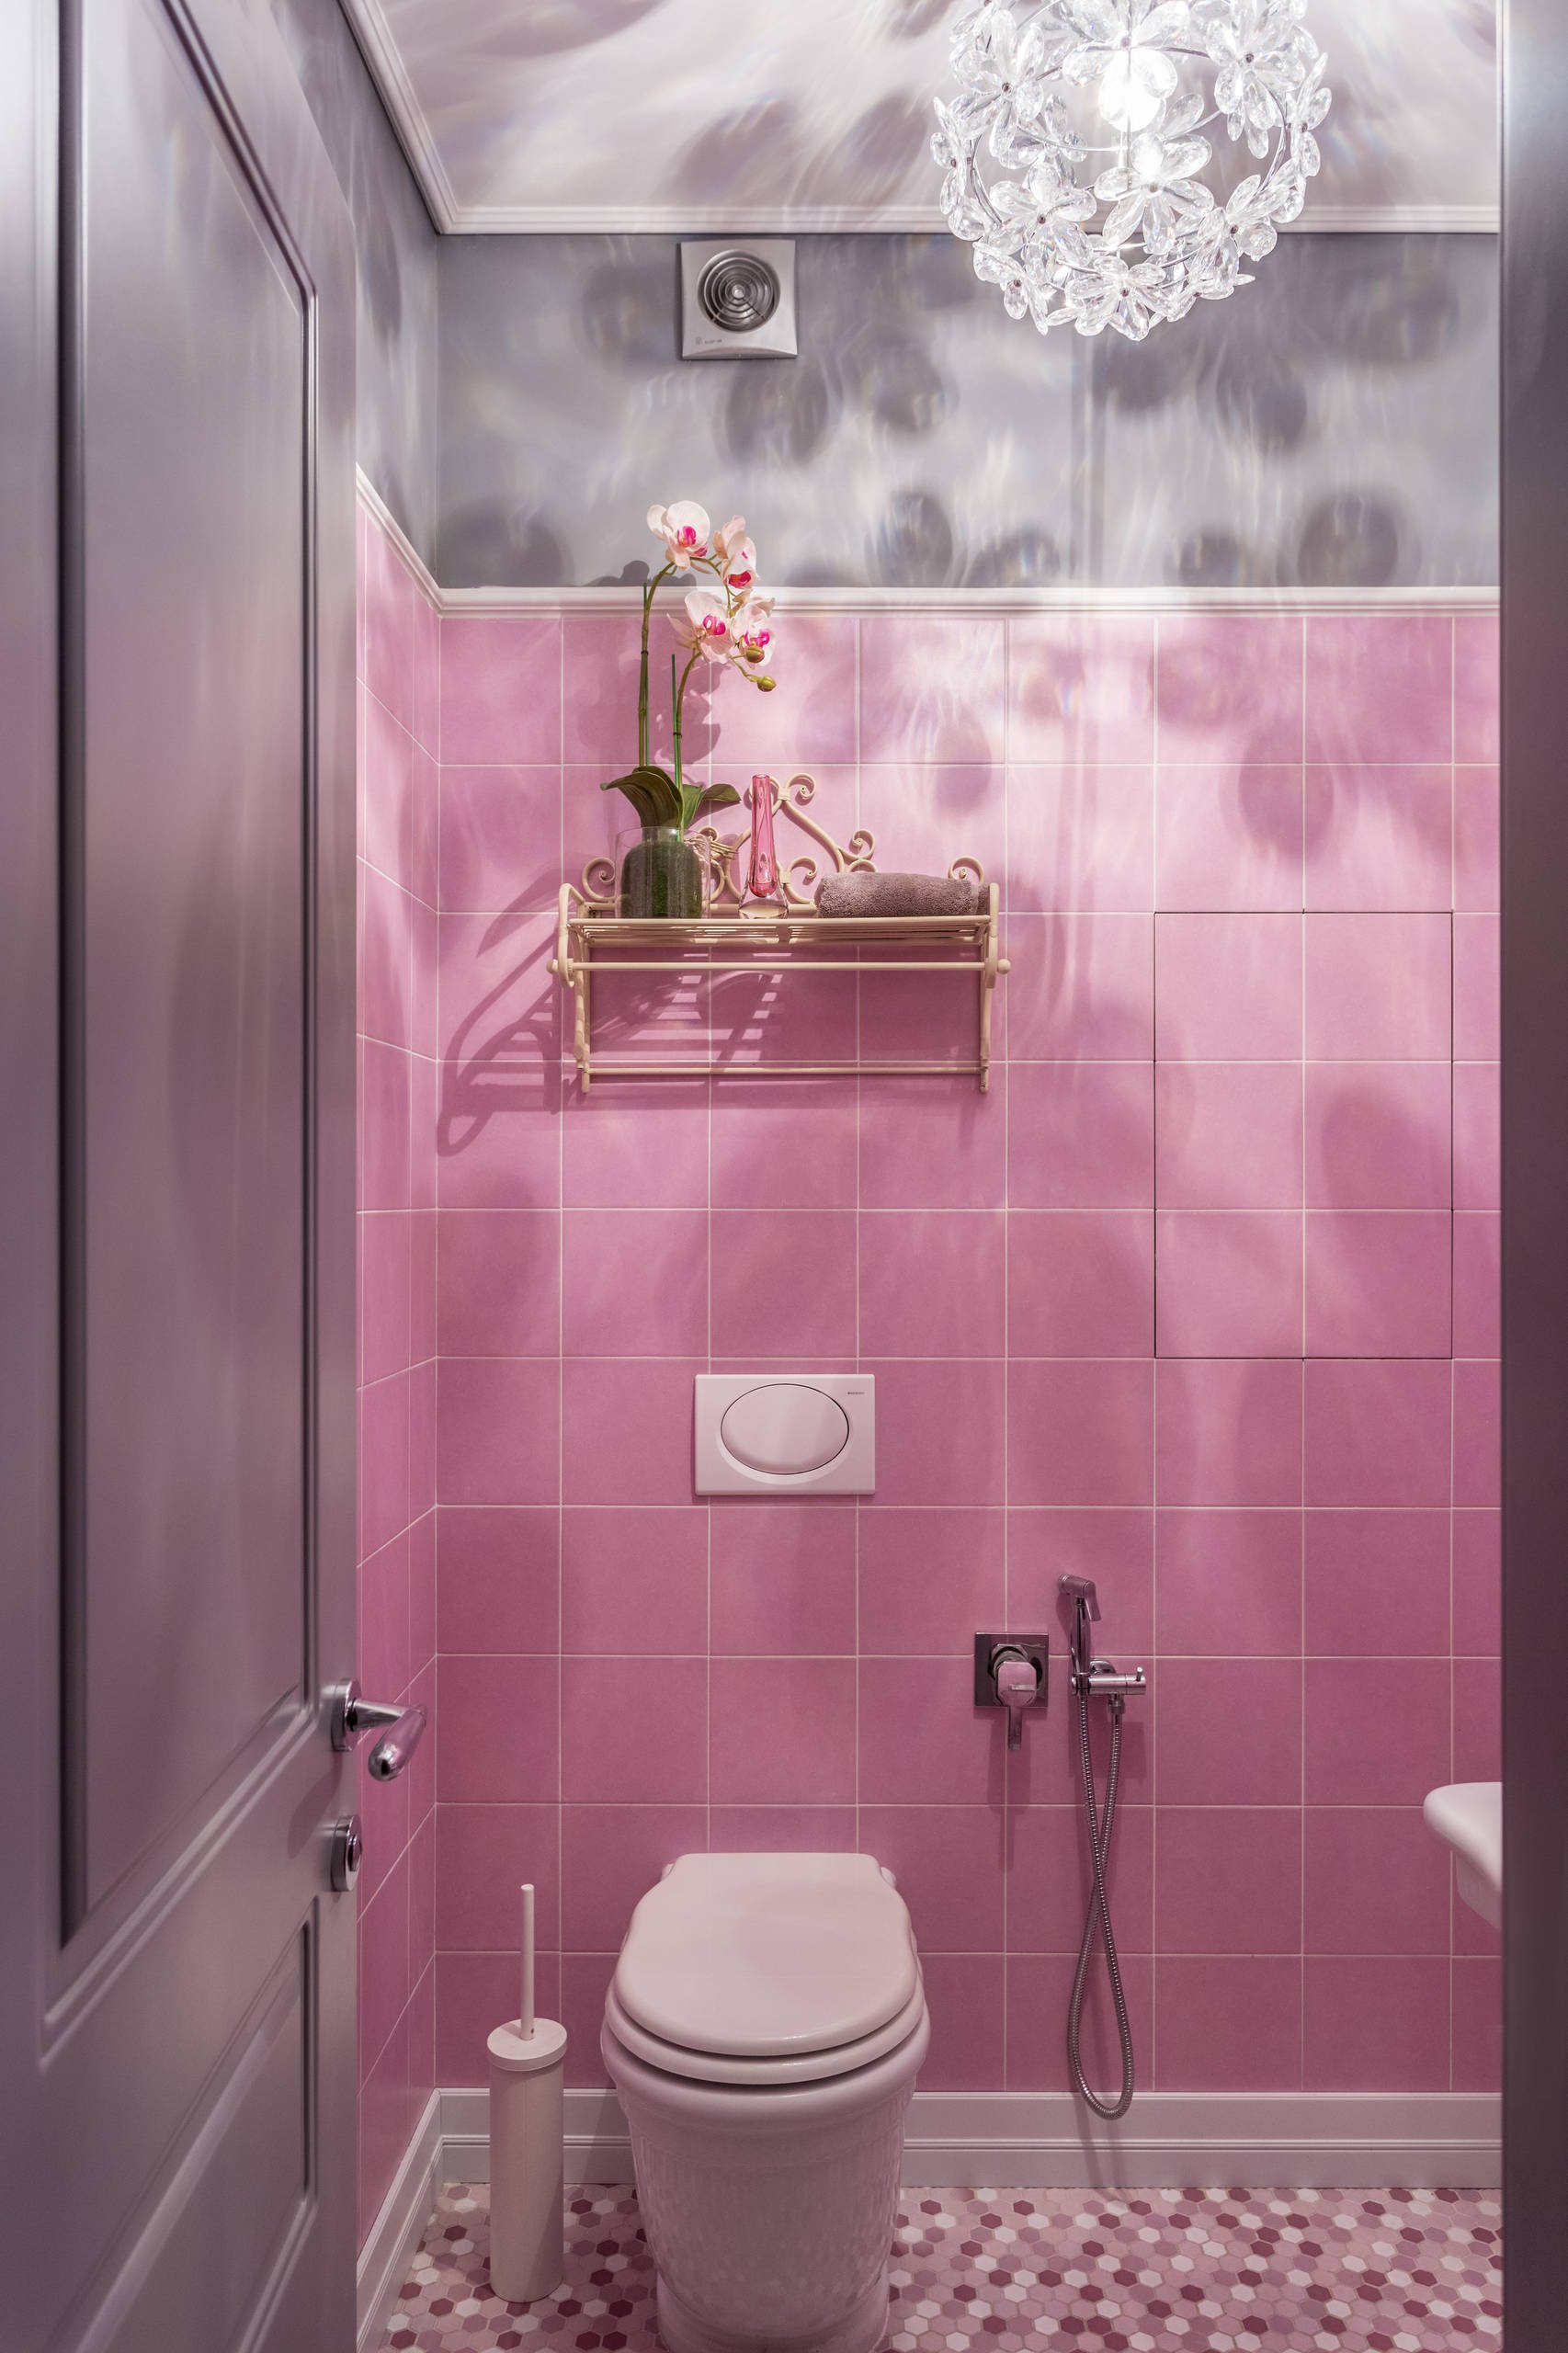 Плитка розовый цвет. Туалет в розовых тонах. Плитка в туалет. Плитка в ванную розовая. Плитка для ванной комнаты розовая.